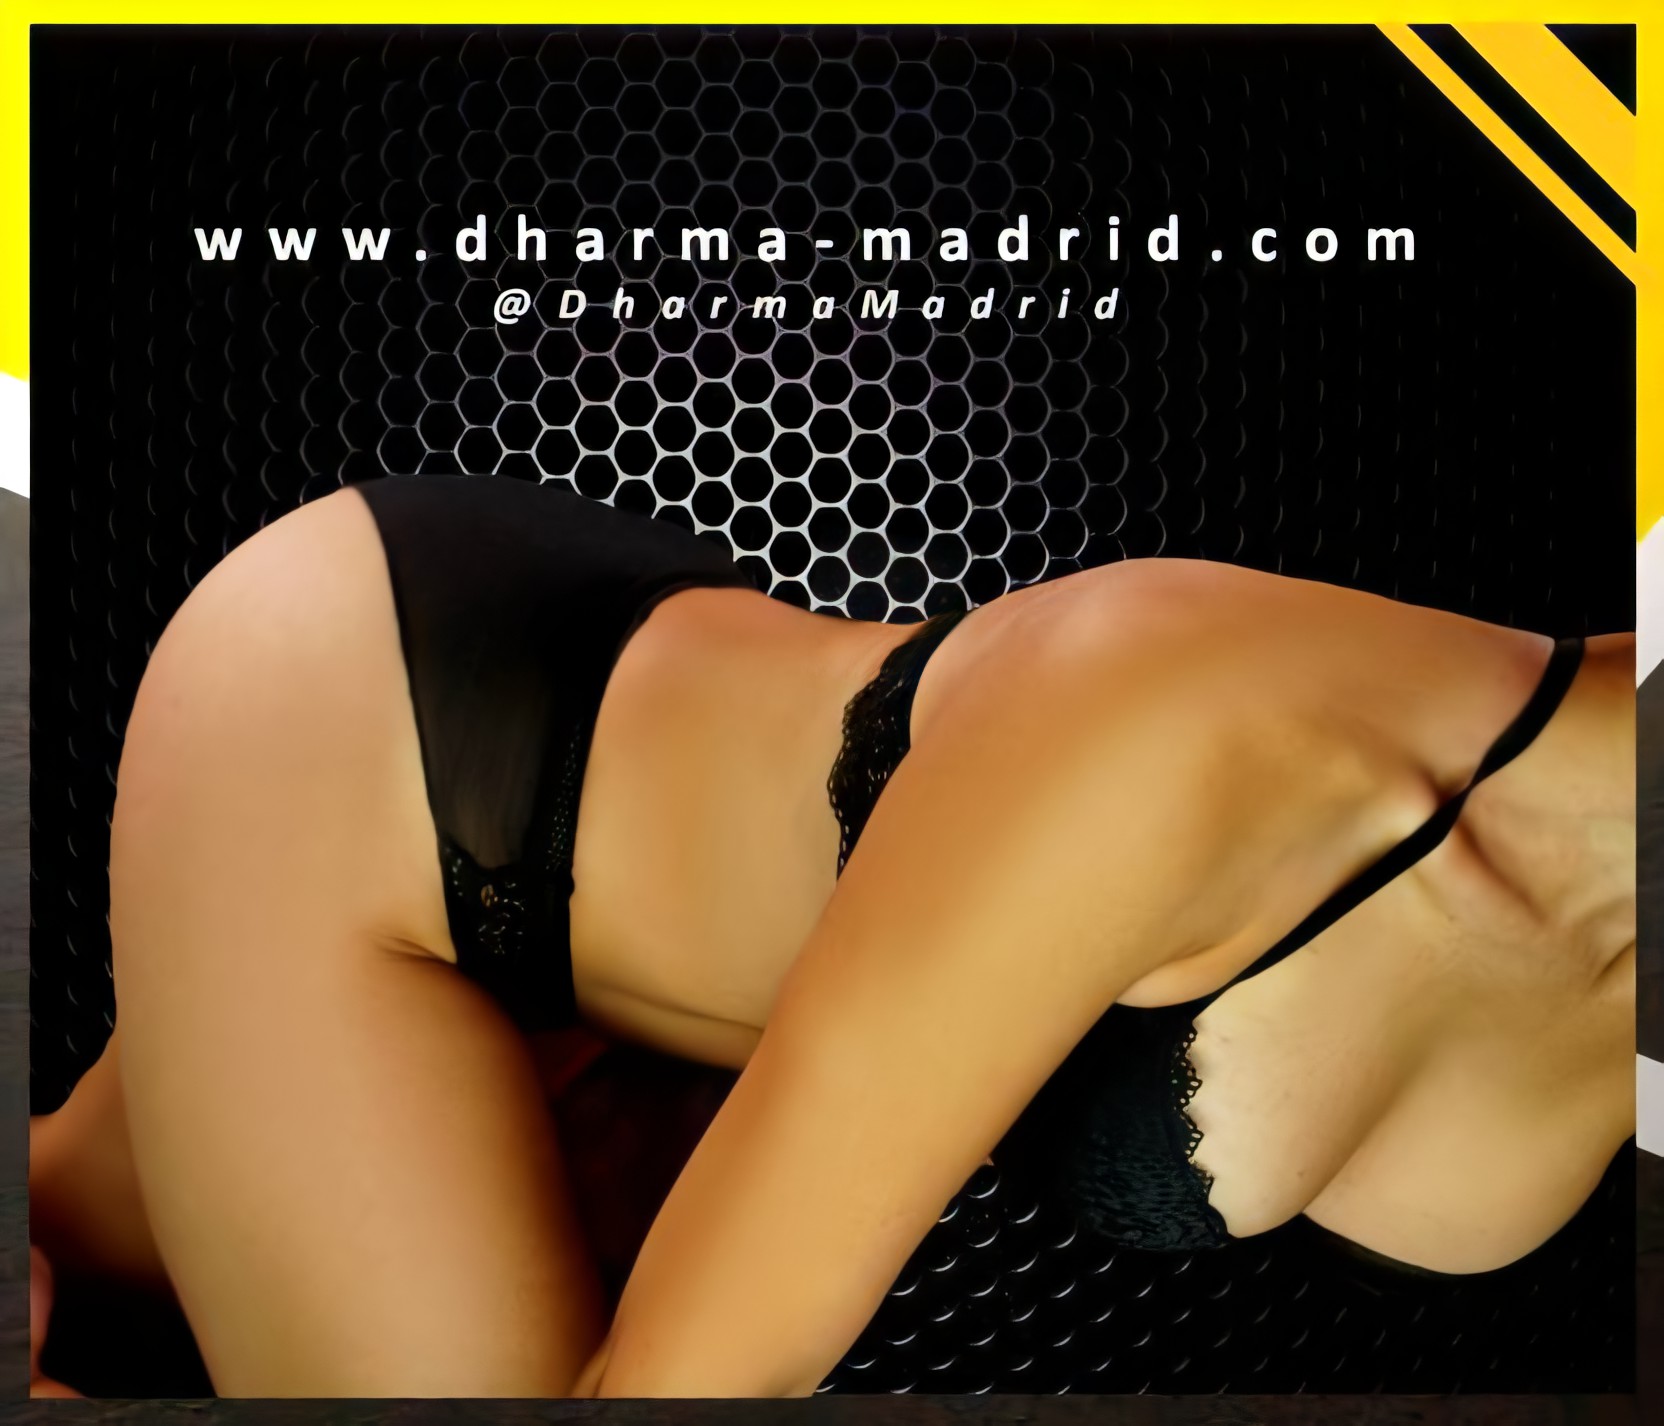 masajistas-eroticos madrid [CENTRO DE MASAJES EROTICOS] MADRID